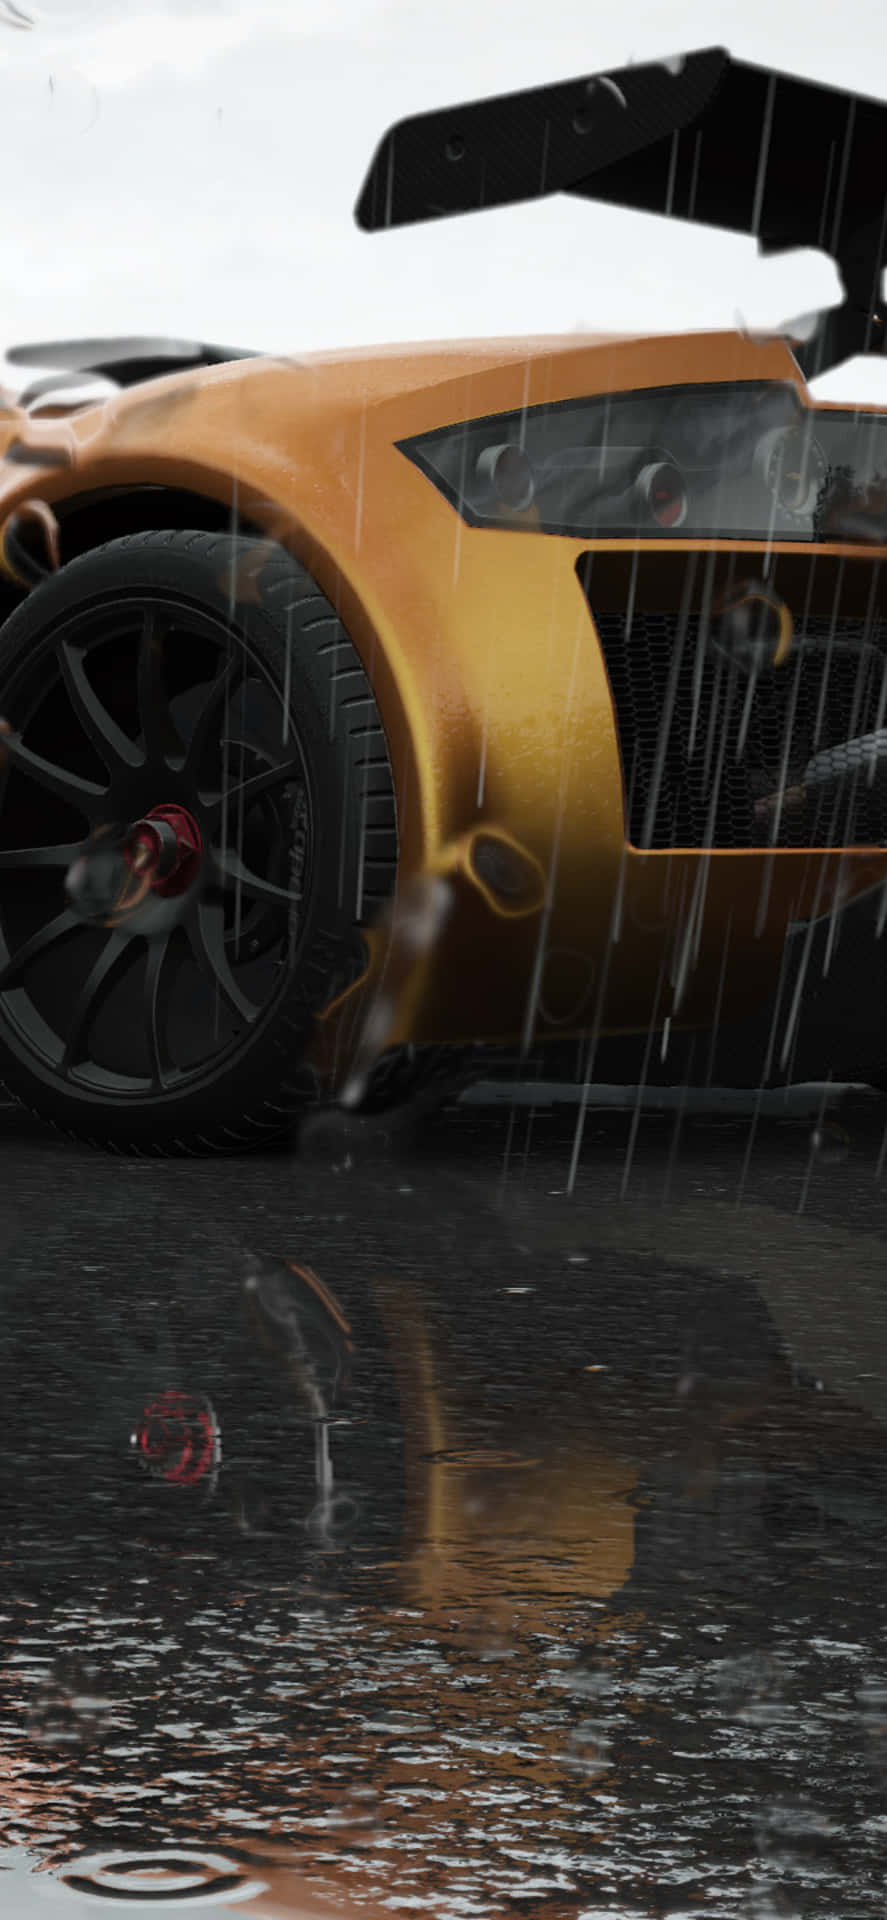 Estaimagen Presenta Un Simulador De Carreras De Iphone Xs Max Con Project Cars 2.